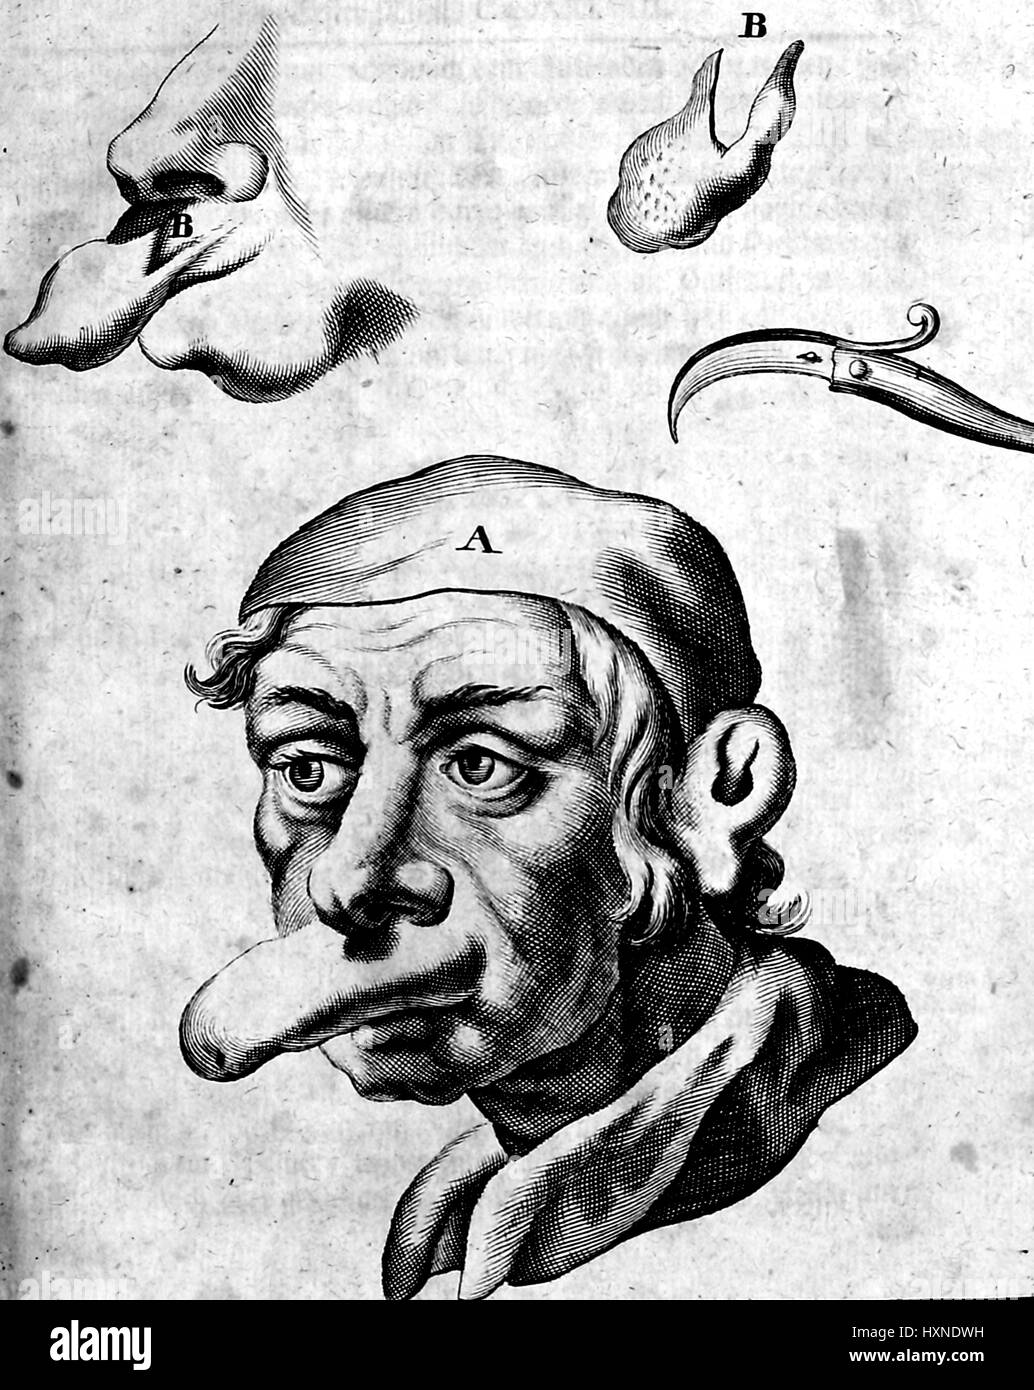 Illustration médicale d'un homme avec une grande partie saillante une déformation, ainsi qu'une vue détaillée de la déformation, et d'un outil chirurgical utilisé pour retirer la difformité, 1705. Banque D'Images